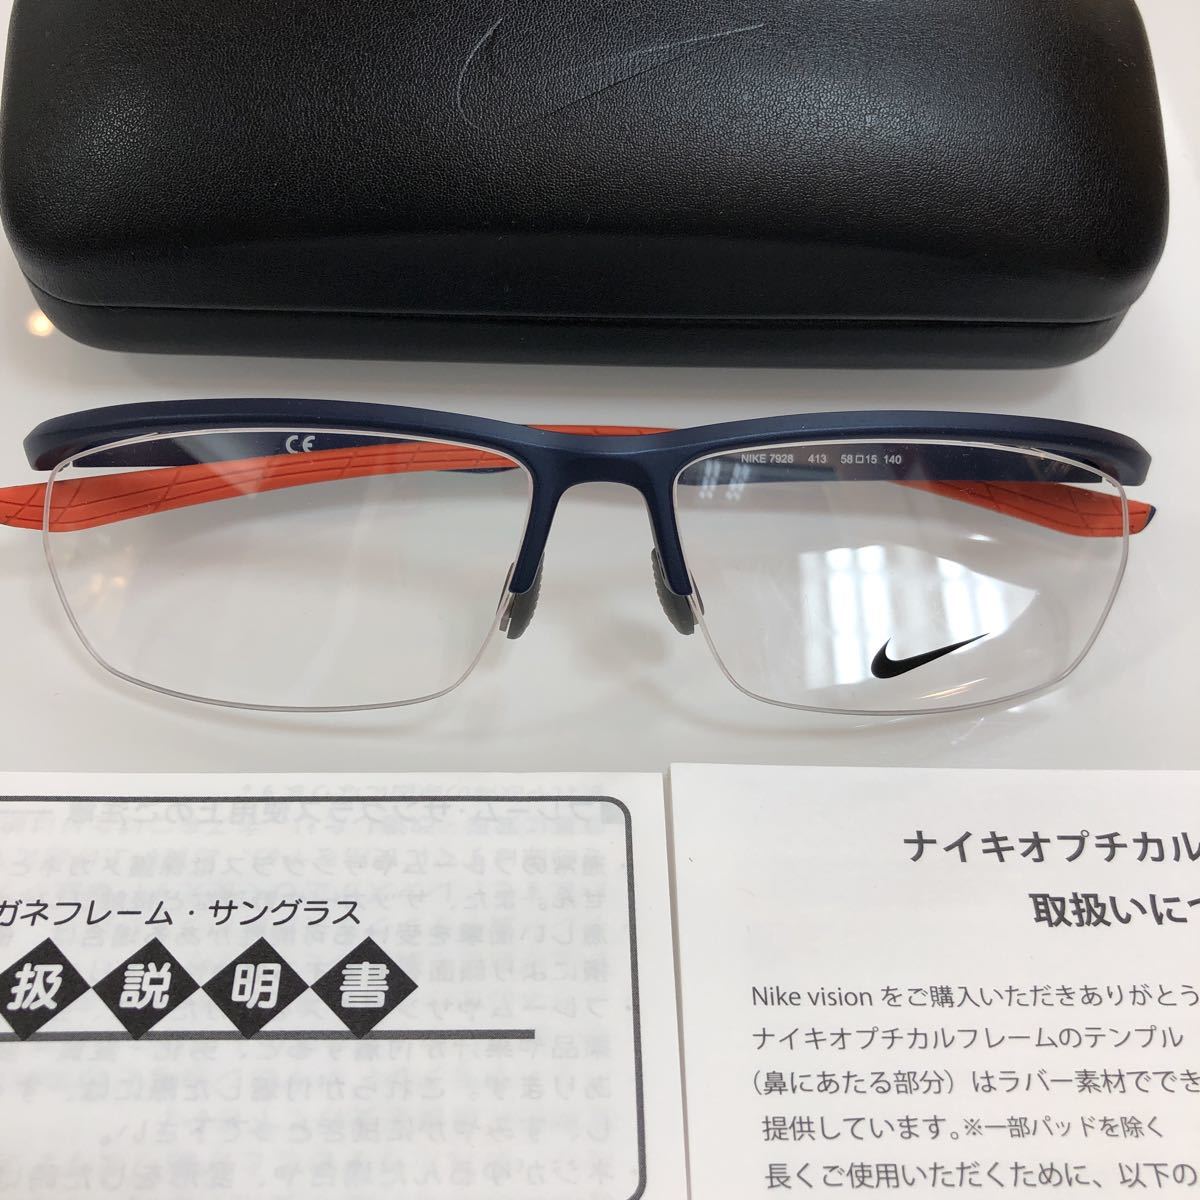 定価16,500円 正規品 7928 NIKE7928 NK7928 413 NIKE VISION VORTEX ナイキ ボルテックス メガネ フレーム メガネフレーム 正規品 眼鏡